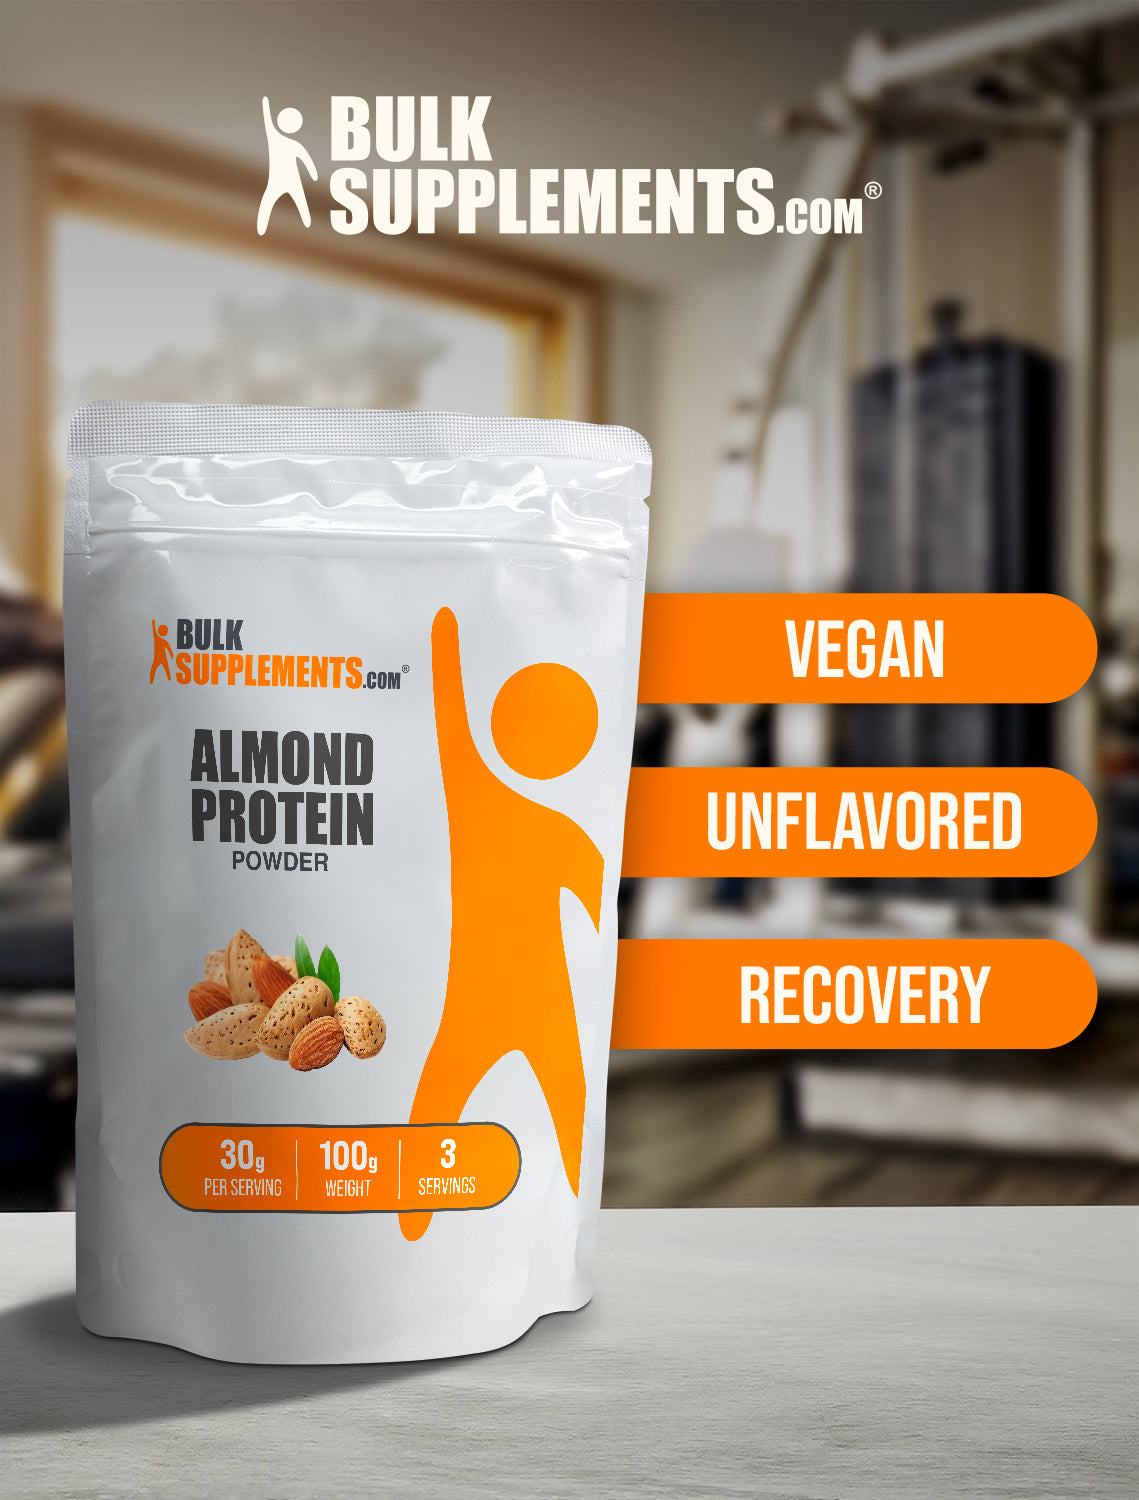 Almond protein powder 100g keywords image